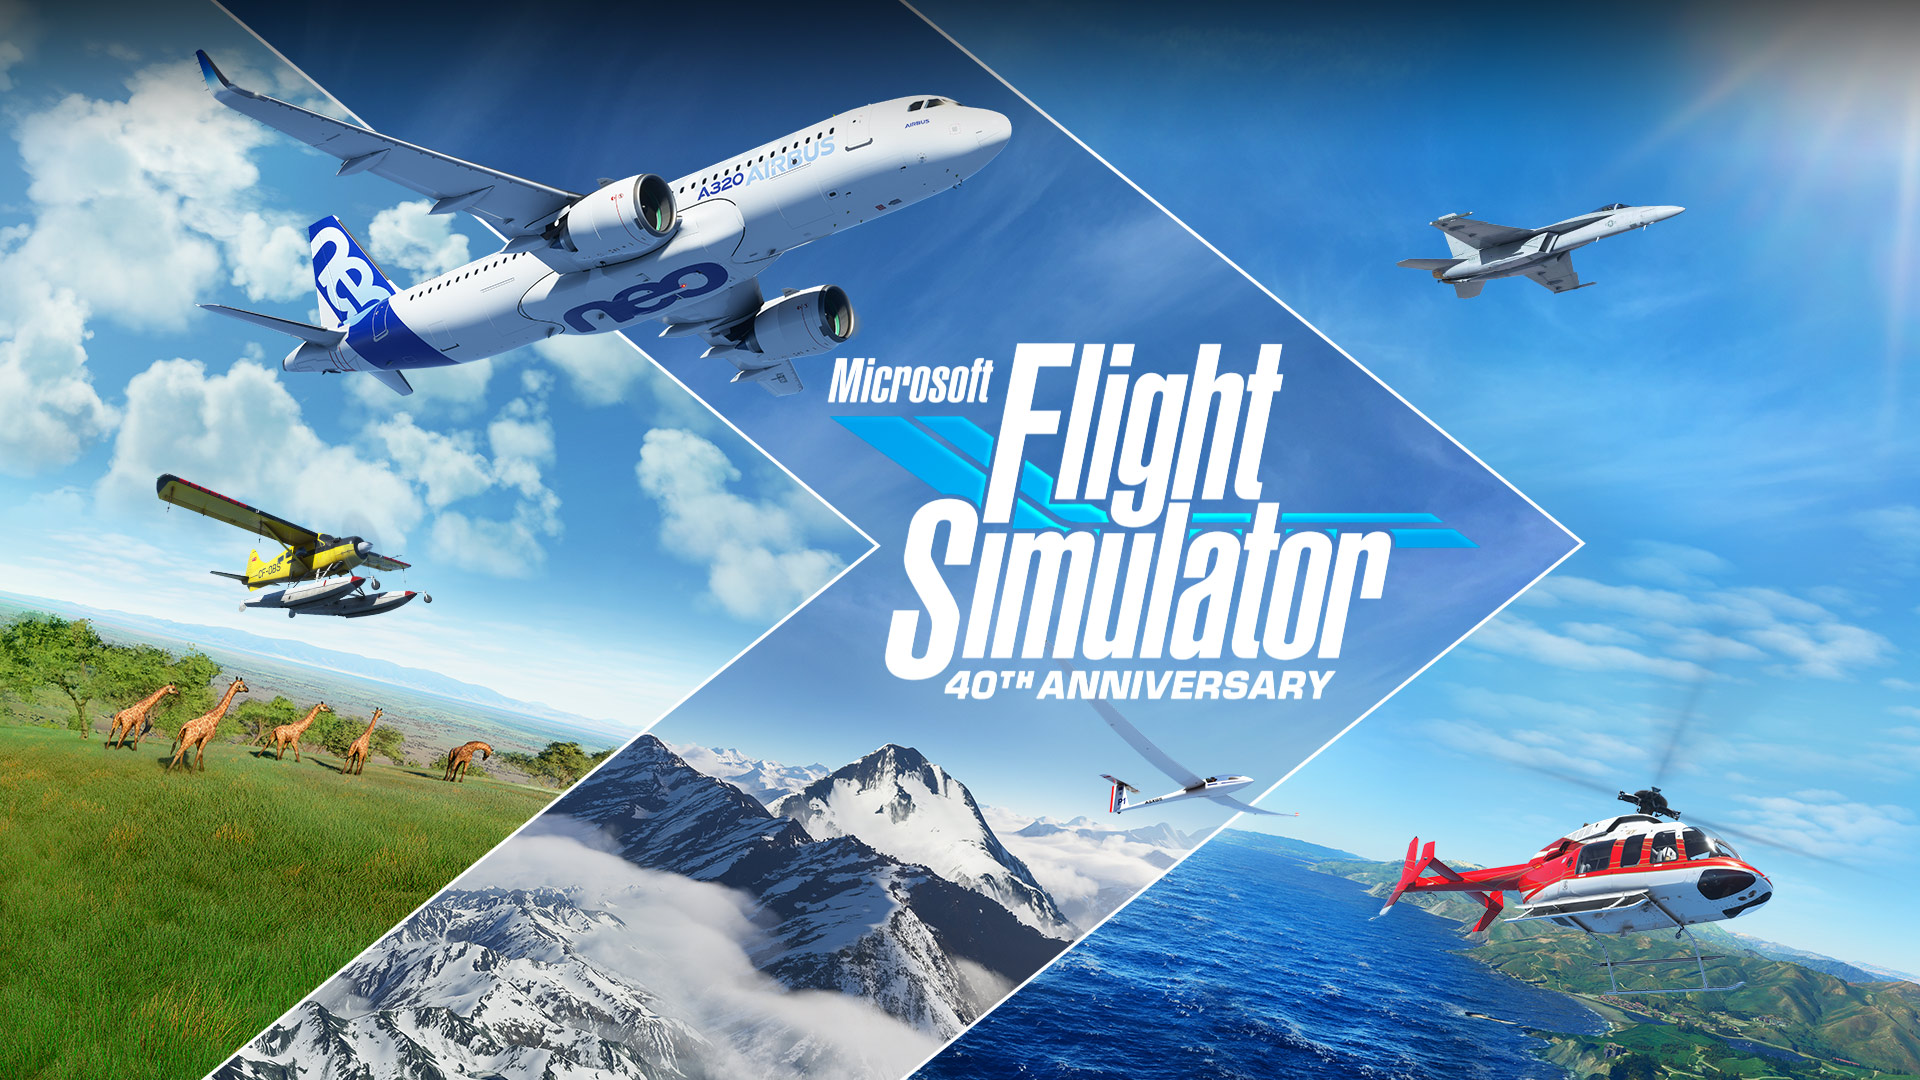 O Microsoft Flight Simulator é uma experiência autêntica e crível da vida real, mas ainda melhor com óculos de realidade virtual!